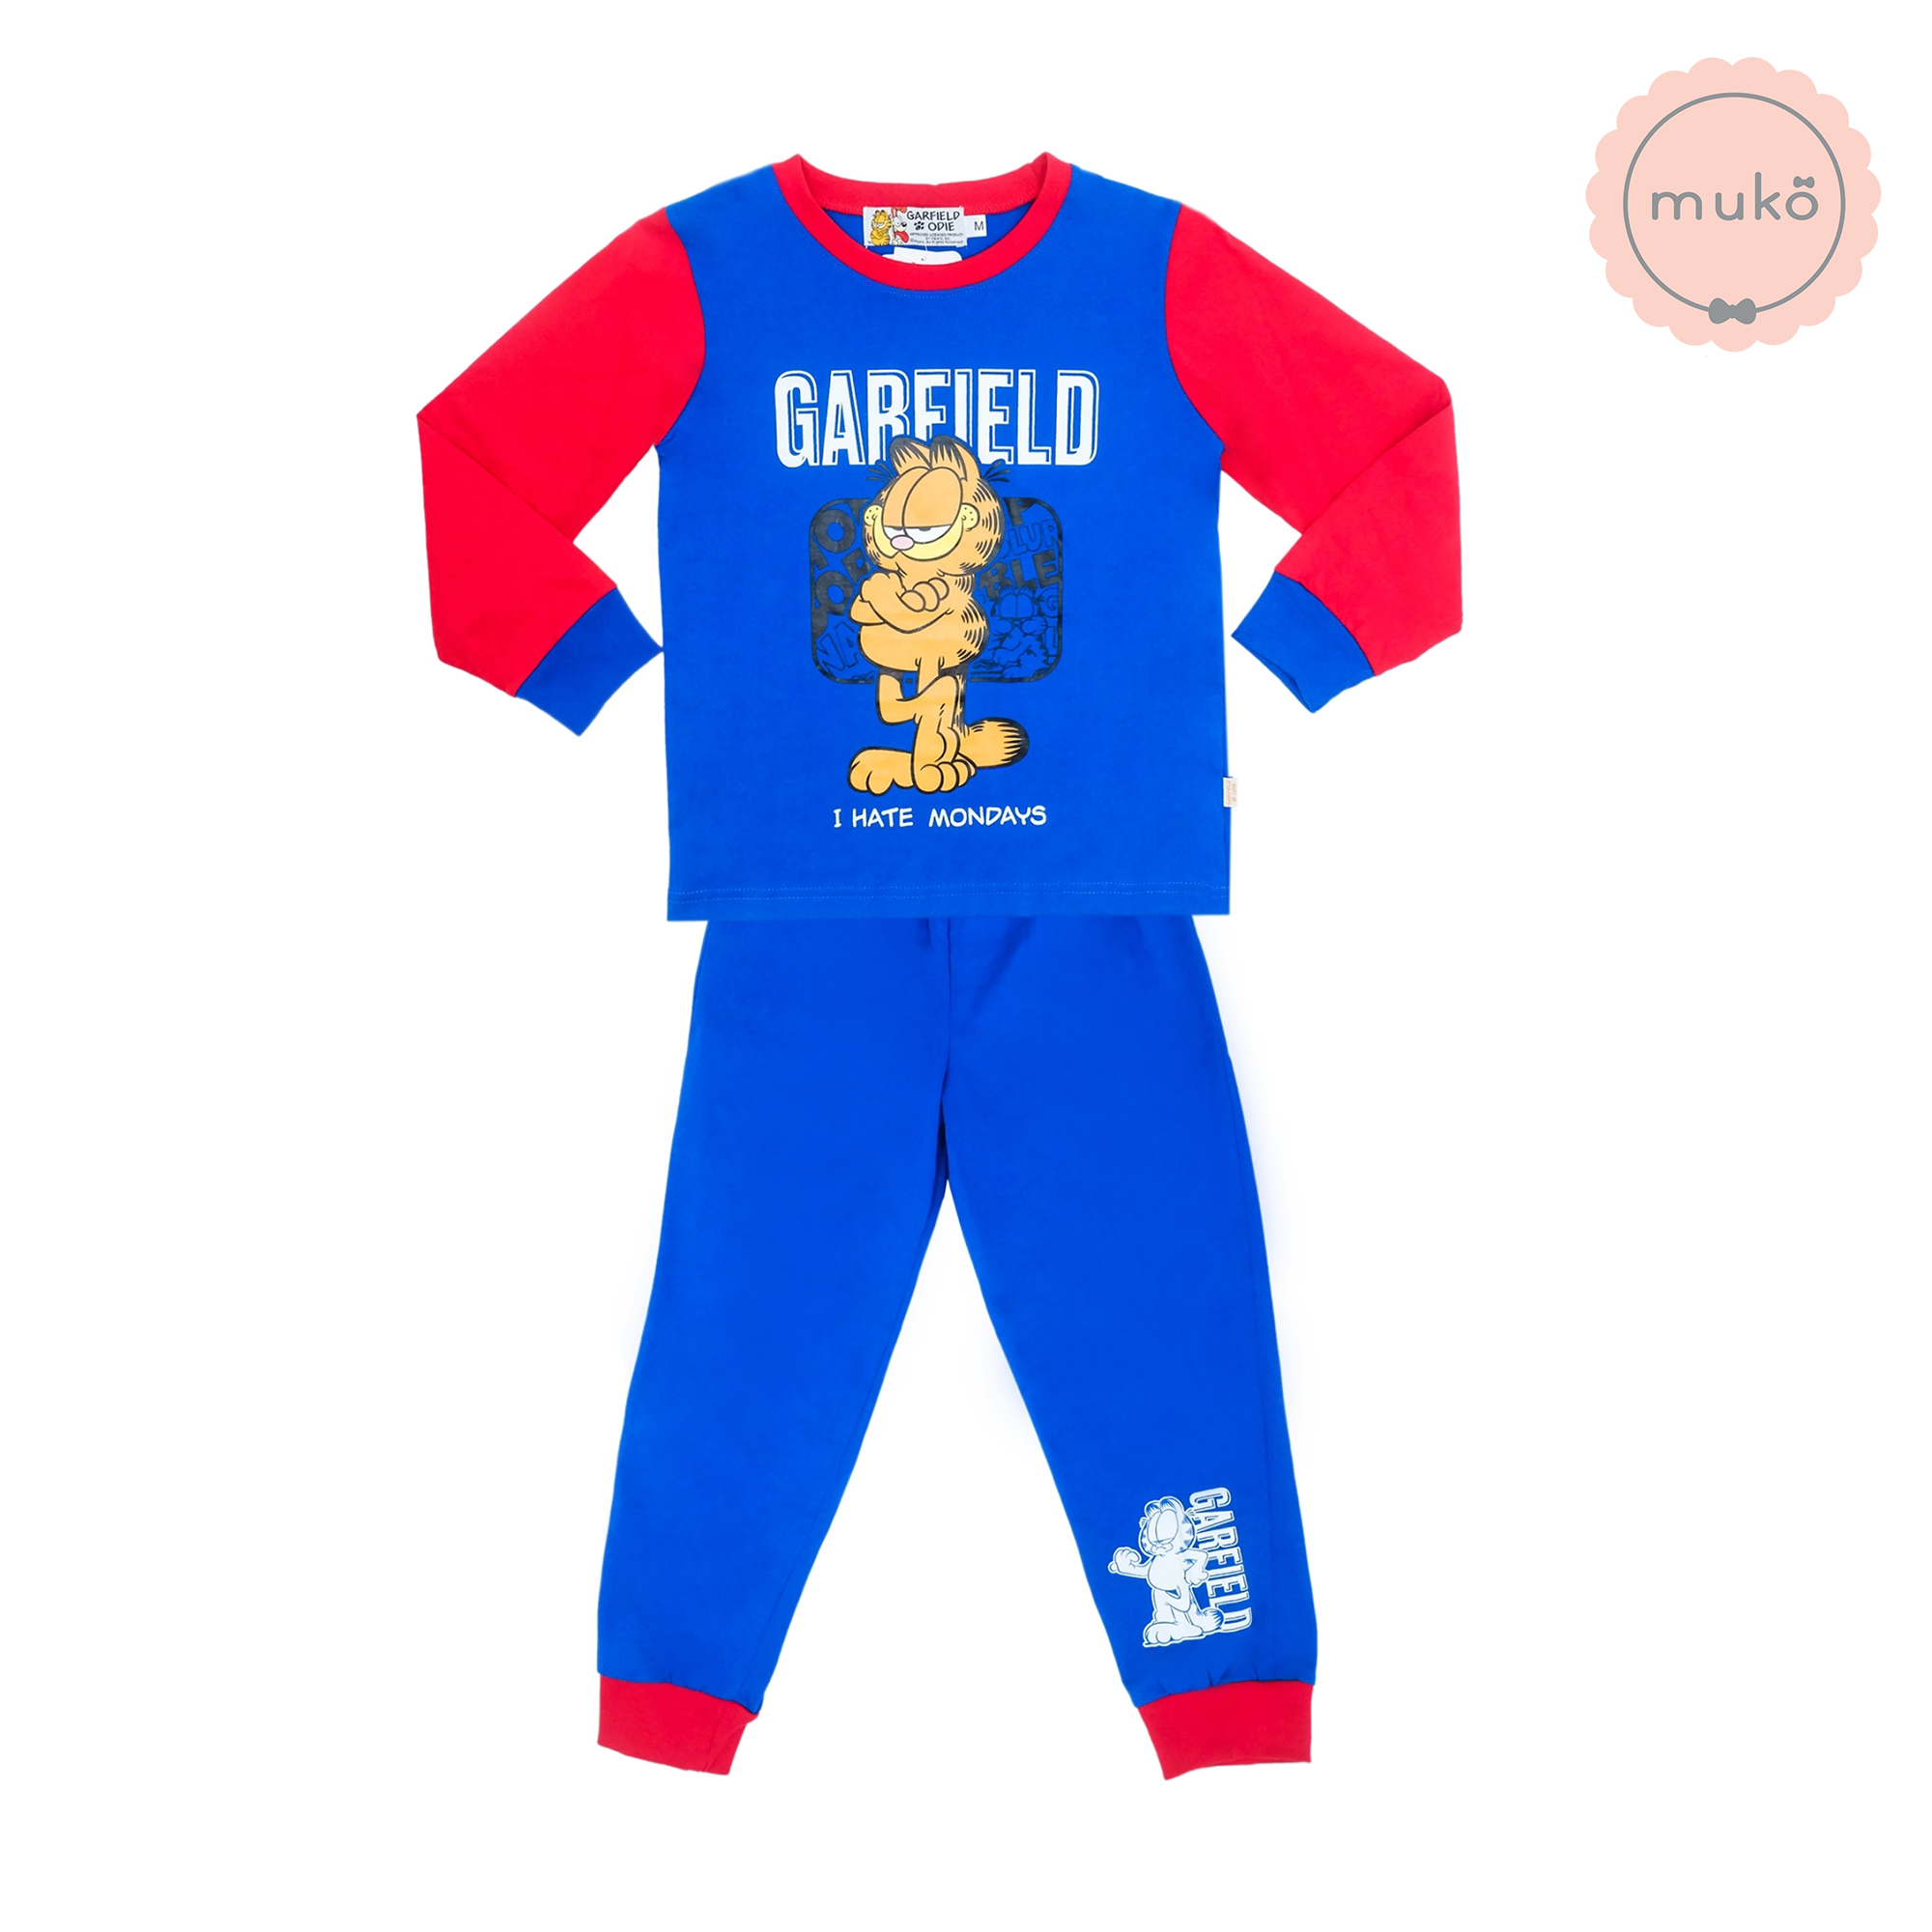 ชุดเด็ก 6-7 ขวบ แขนยาว-ขายาว (Size L) MGF127-103-XL-Midnight Blue L ลาย กาฟิวส์ Garfield